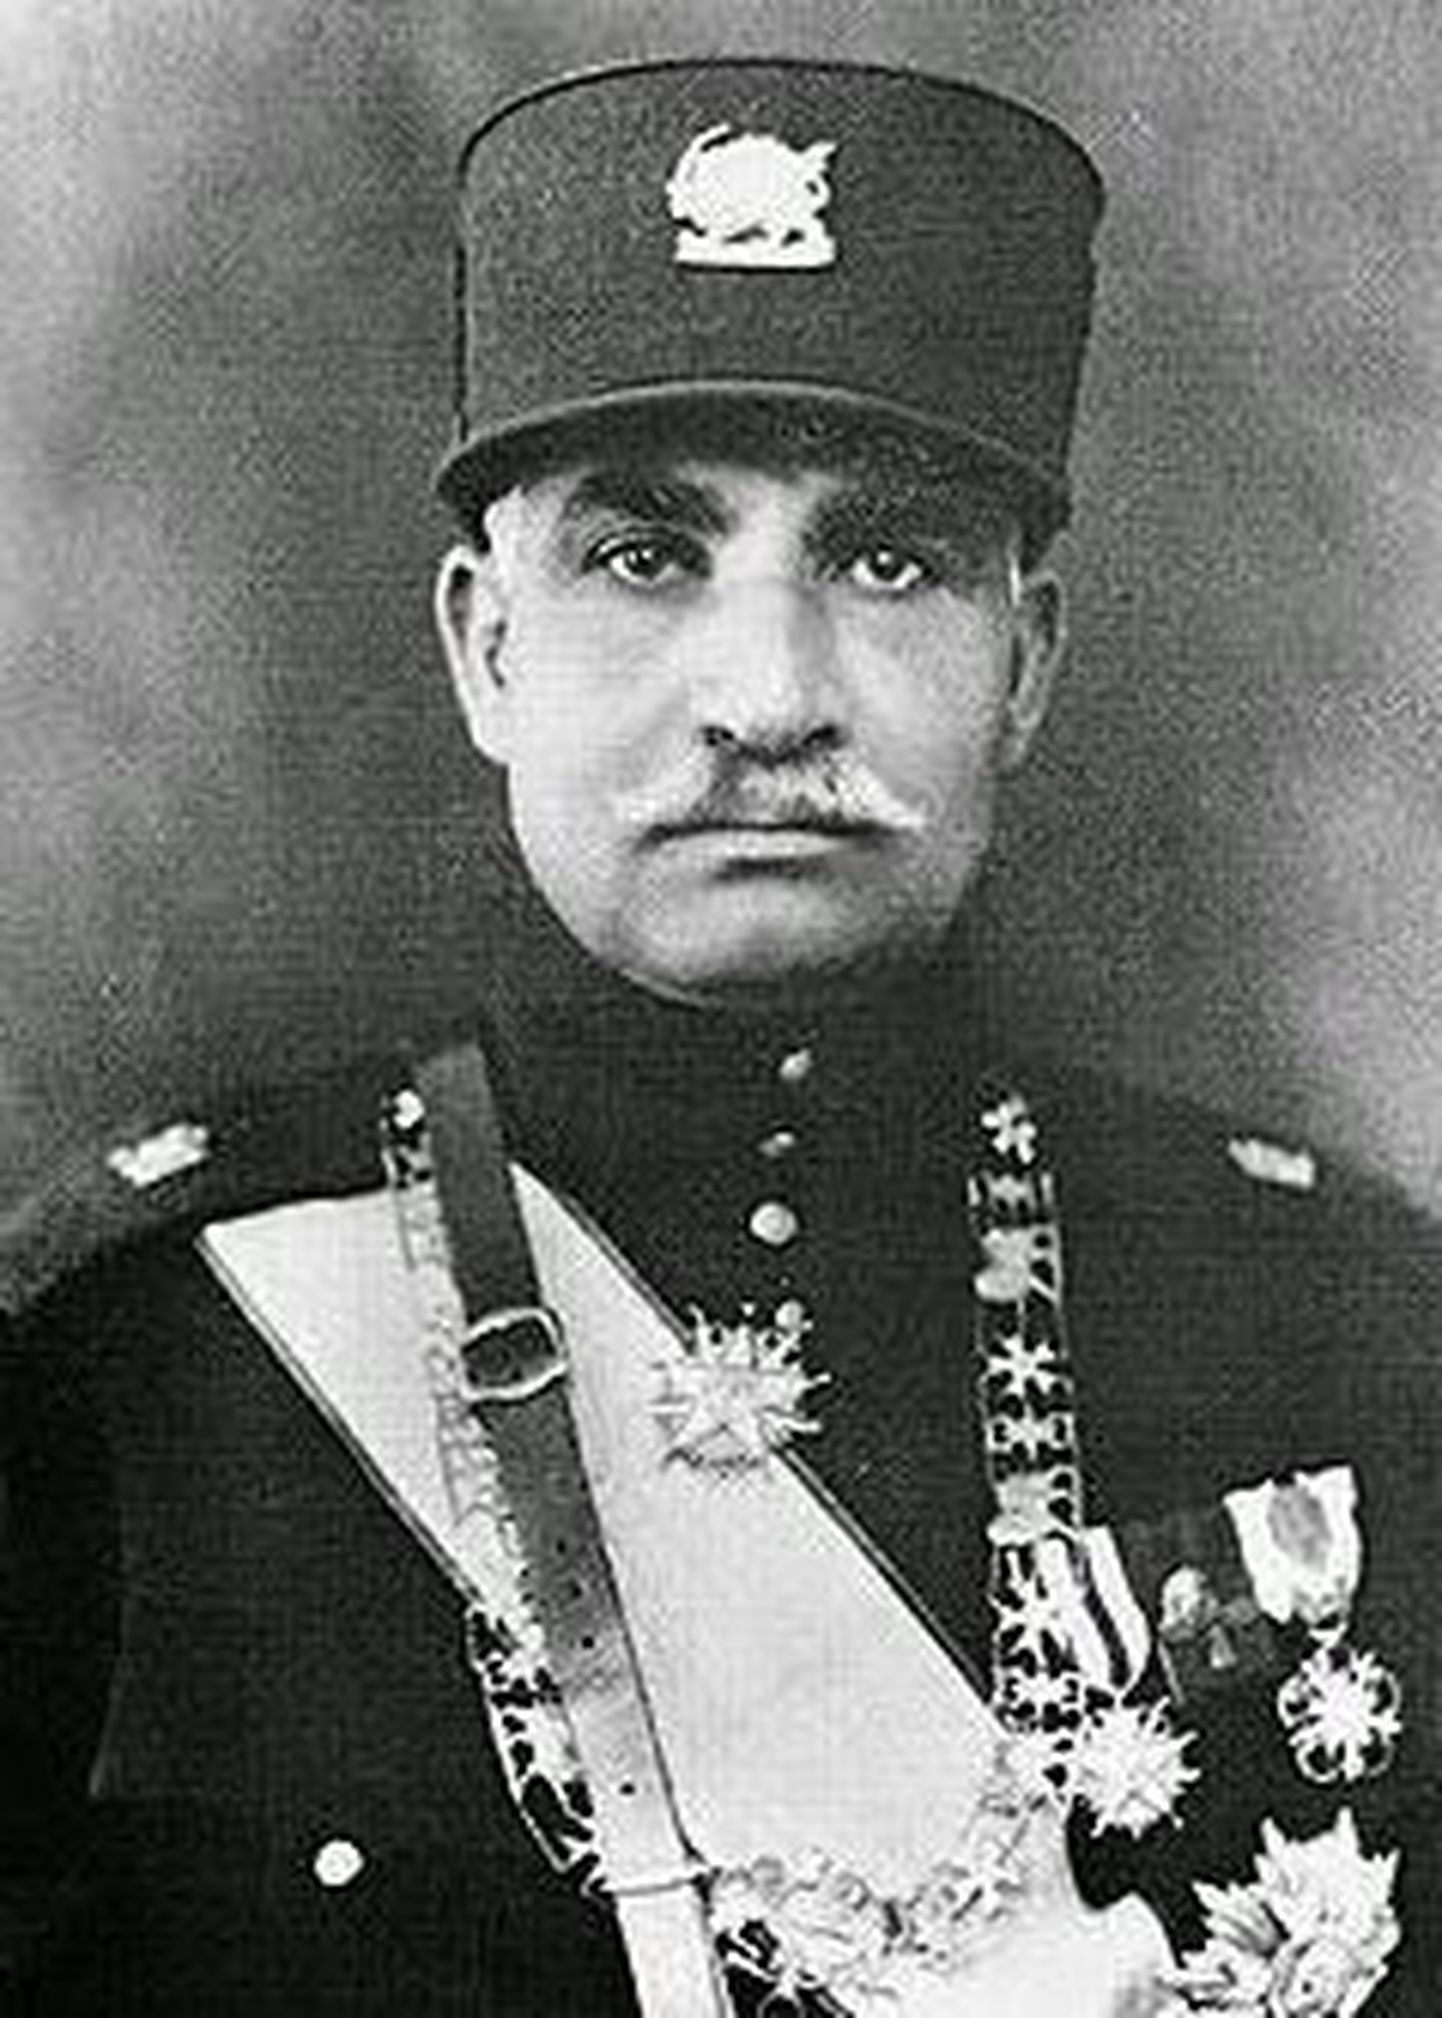 Iraani šahh Reẕā Pahlavī (15. märts 1878 – 26. juuli 1944)